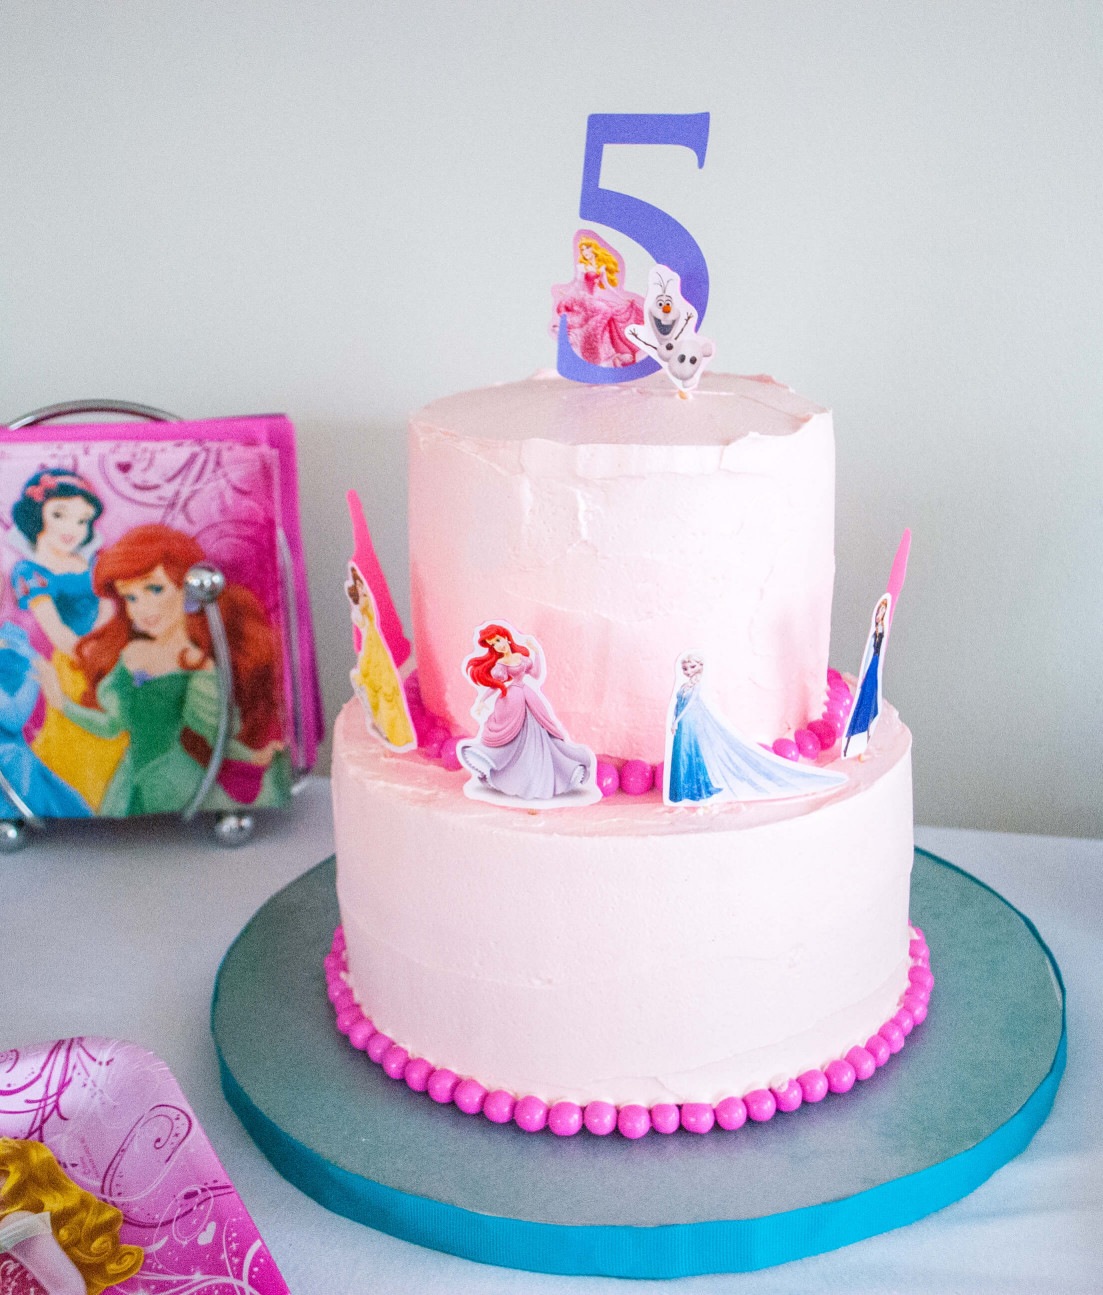 Princess Birthday Cake
 Make an Easy Disney Princess Birthday Cake Using Stickers